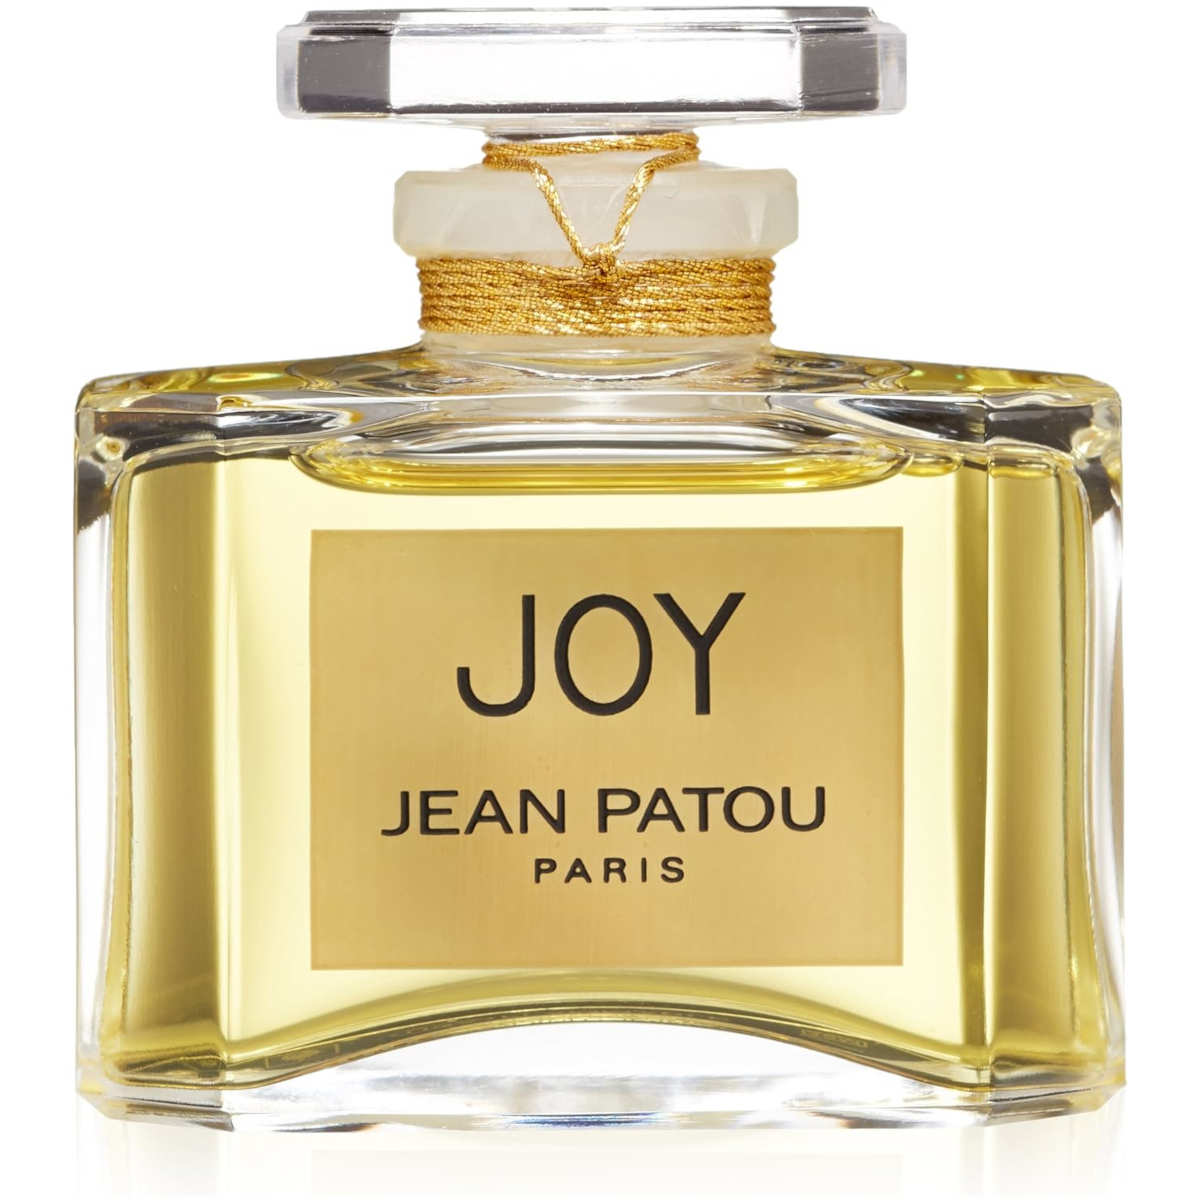 Joy profumo Jean Patou